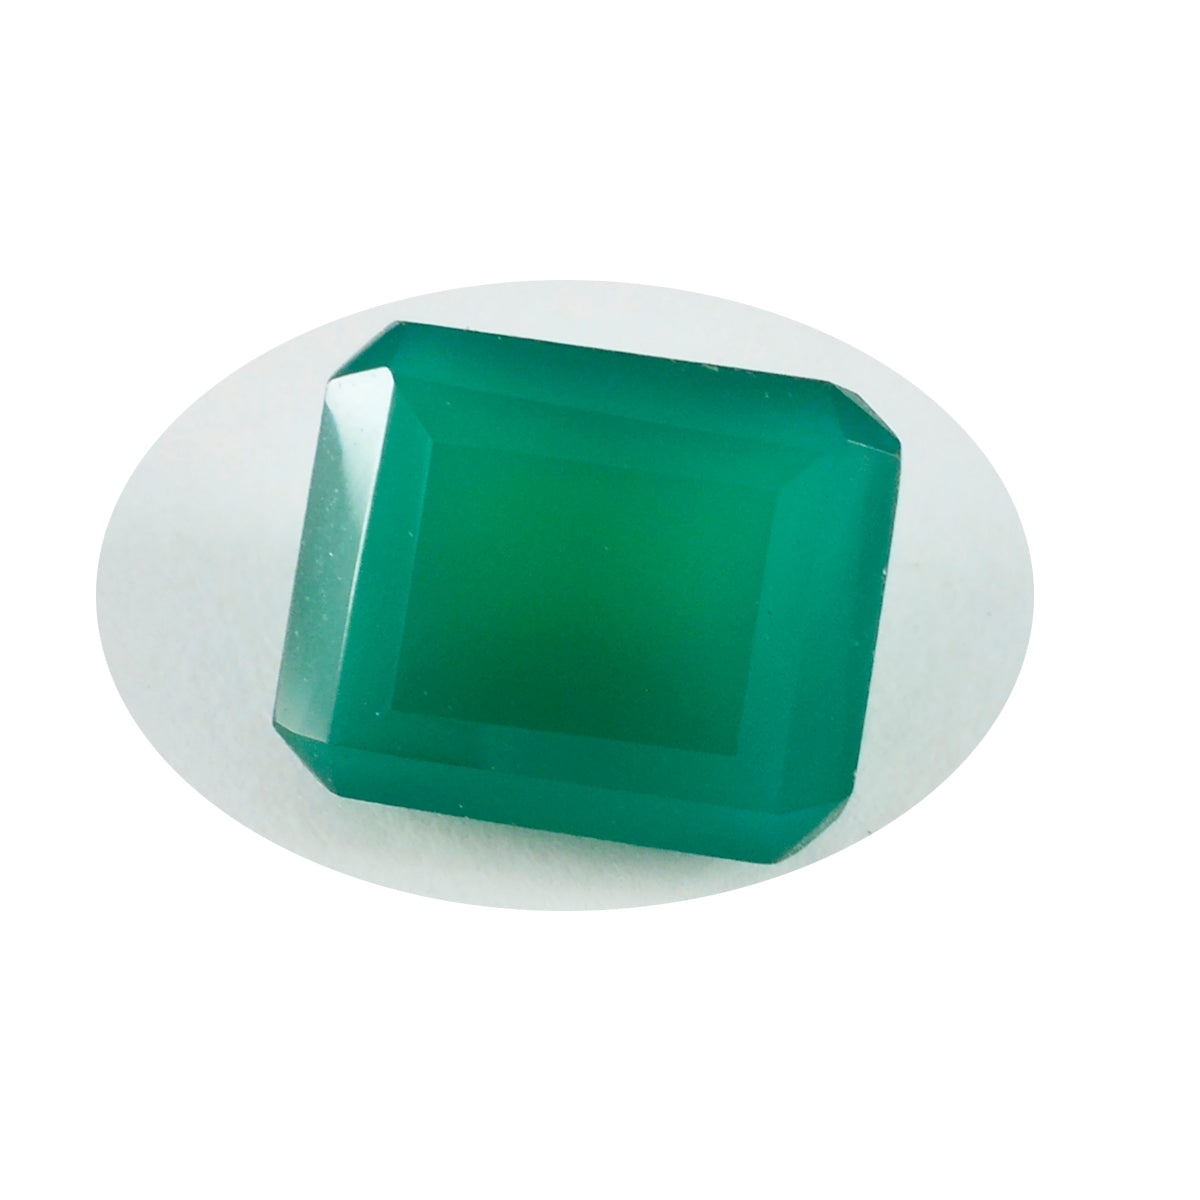 Riyogems 1 pièce véritable onyx vert à facettes 10x14mm forme octogonale bonne qualité gemme en vrac